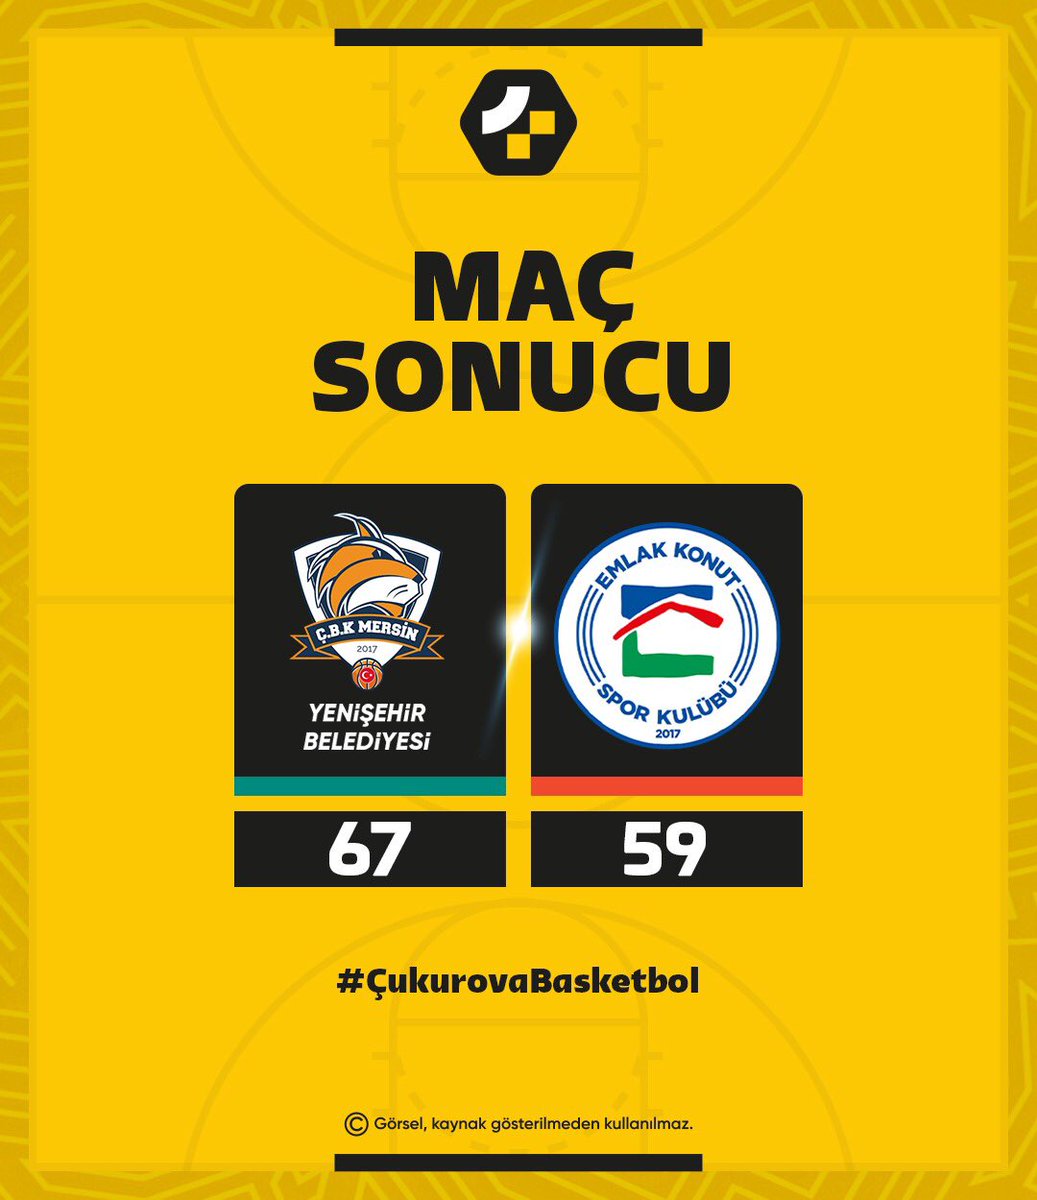 ING Kadınlar Basketbol Süper Ligin'de mücadele eden ÇBK Mersin Yenişehir Belediyesi, Emlak Konut Spor Kulübünü 67-59 skorla mağlup ederek liderliğini sürdürdü.

#ingkadınlarbasketbolsüperligi #basketbol #kadınlarbasketbolsüperligi #çukurovabasketbol